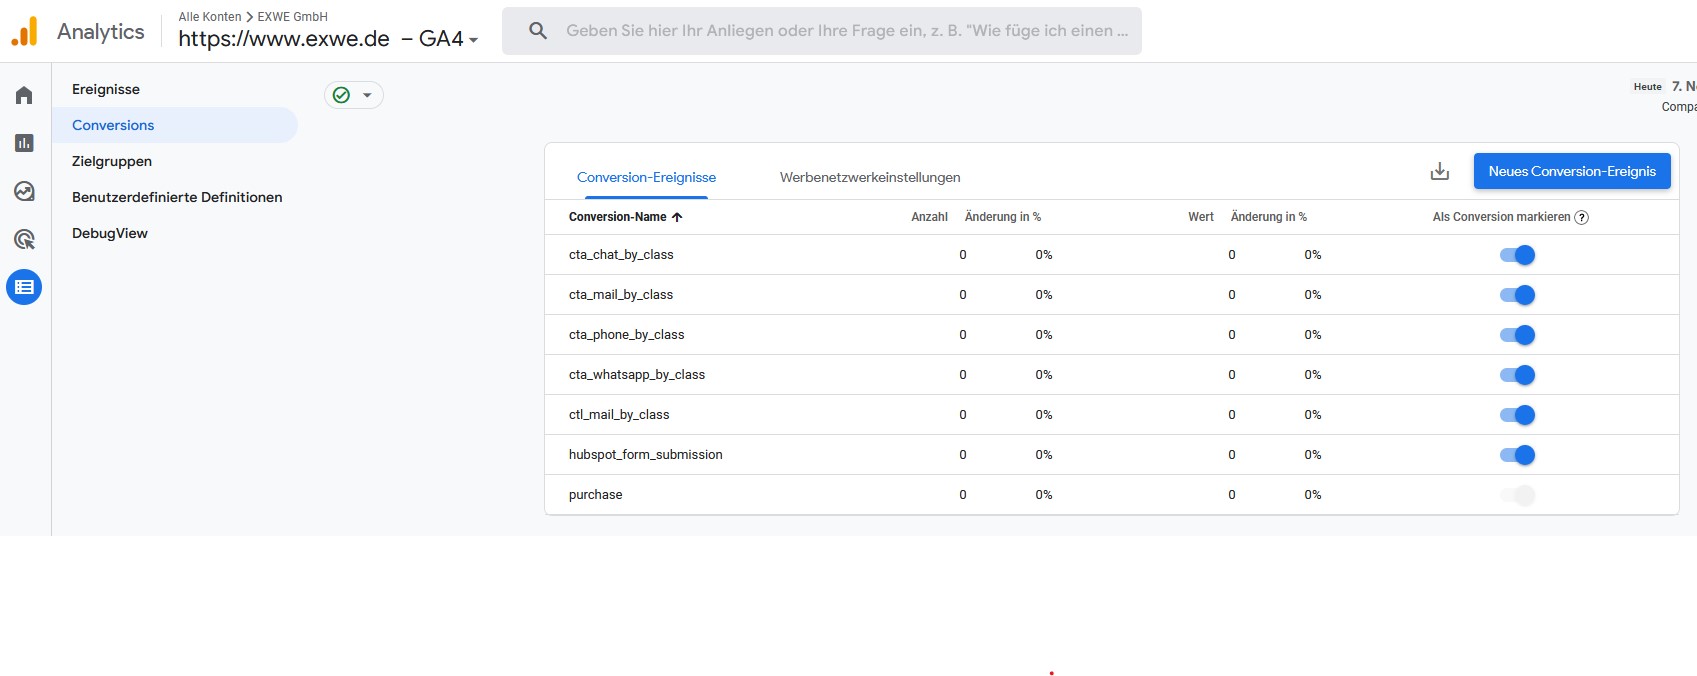 Google Analytics 4 Events als Conversion markieren